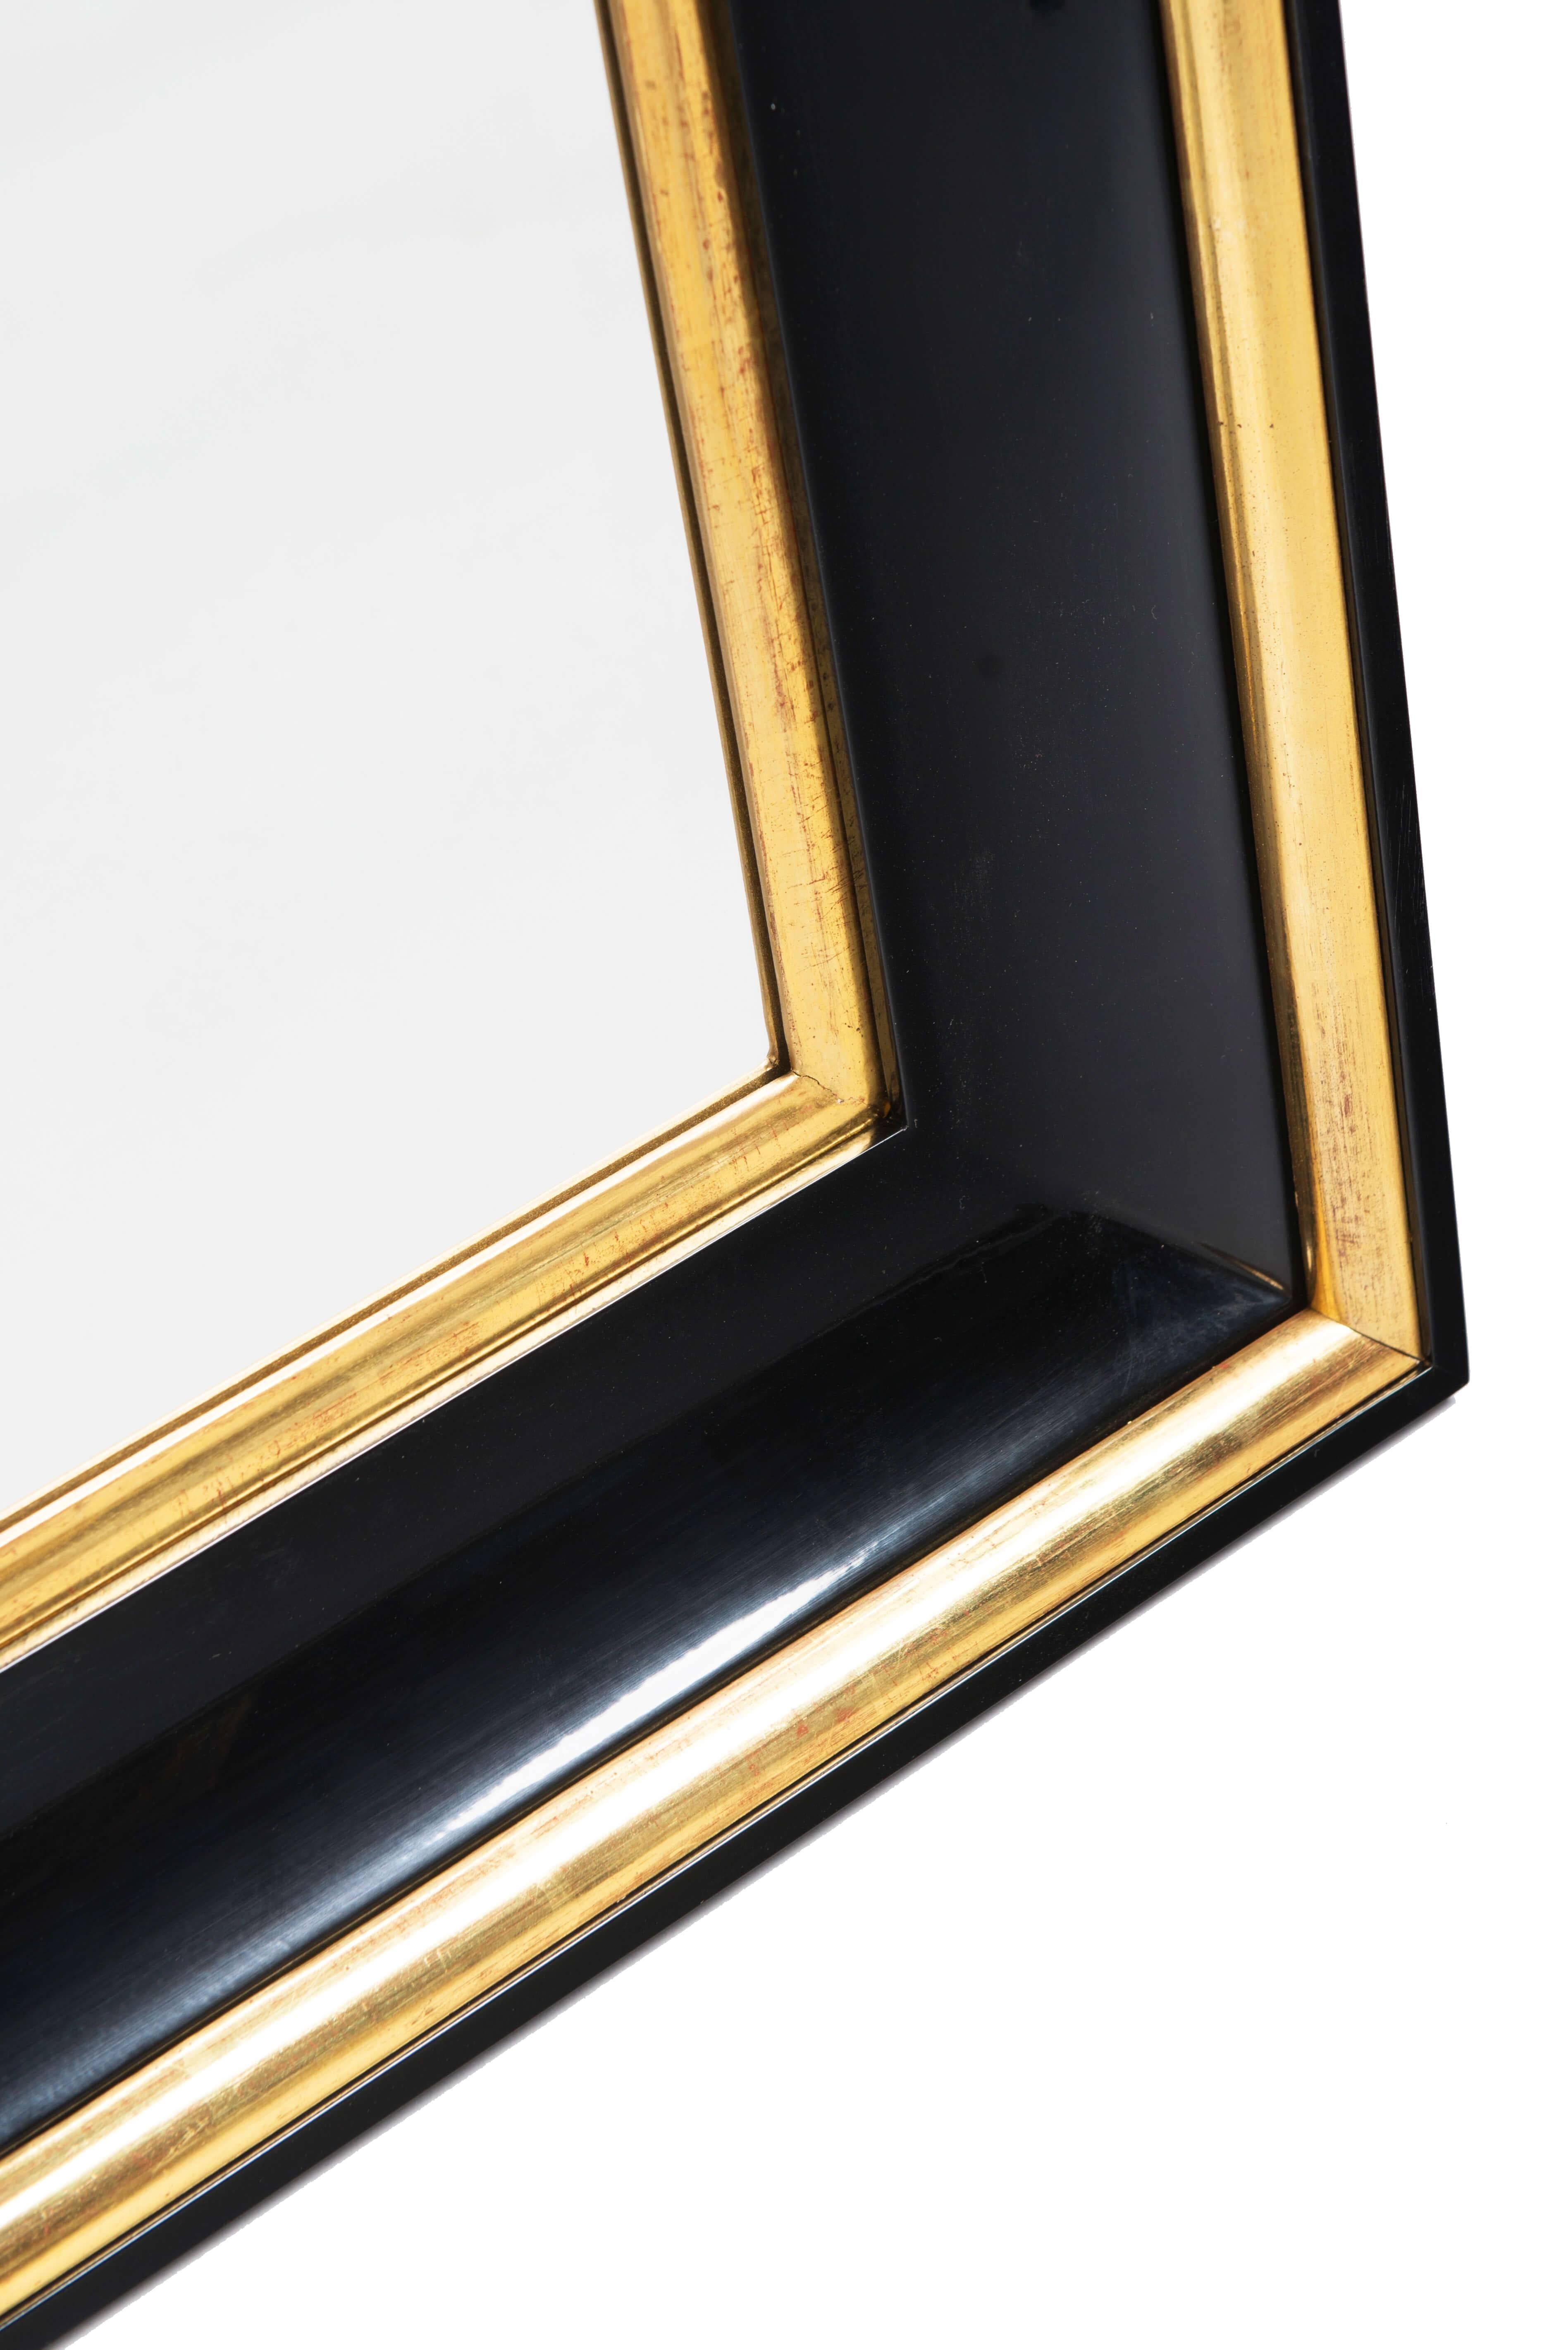 Veneer Pair of Biedermeier Style Mirrors by Iliad Design For Sale